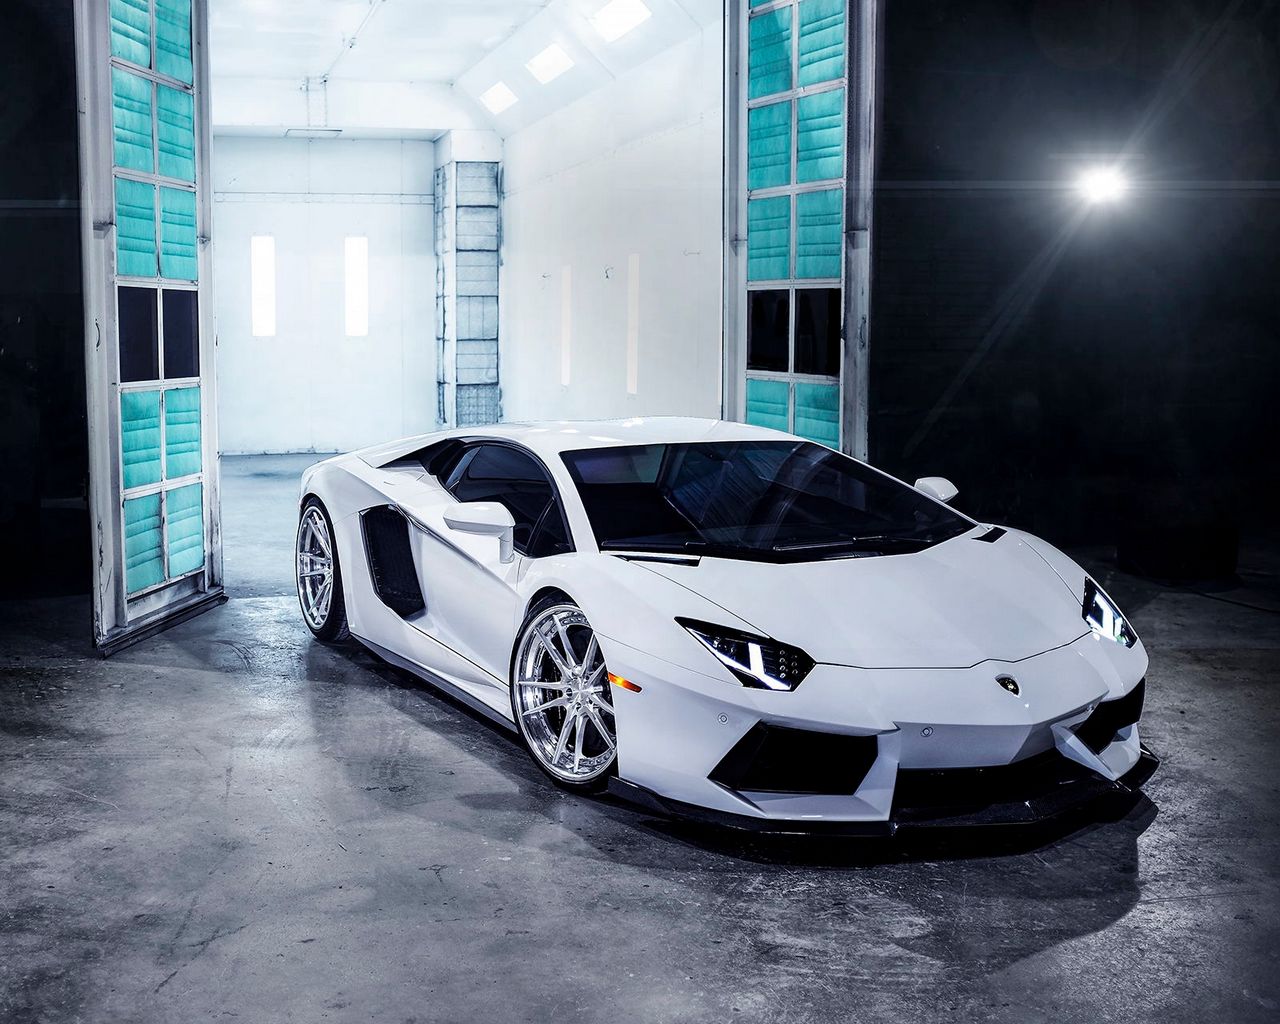 Hình nền siêu xe Lamborghini Aventador - Bạn đang tìm kiếm một hình nền siêu xe đẹp cho điện thoại hoặc máy tính của mình? Hãy tham khảo hình nền siêu xe Lamborghini Aventador, với thiết kế sắc nét và màu sắc đặc trưng của Lamborghini.